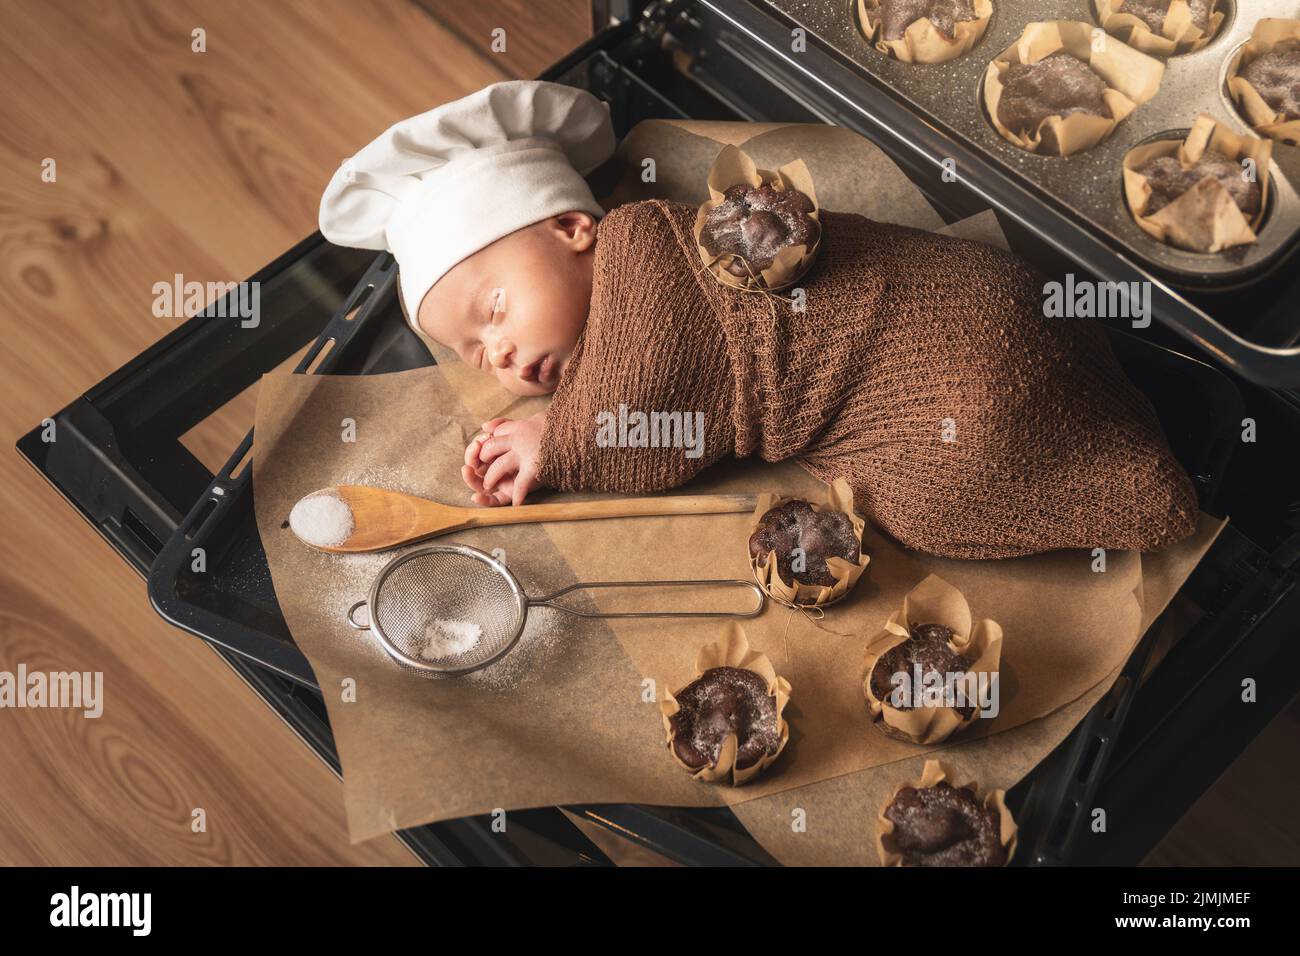 Das neugeborene Baby mit Kochmütze liegt mit Muffins auf dem Backblech Stockfoto